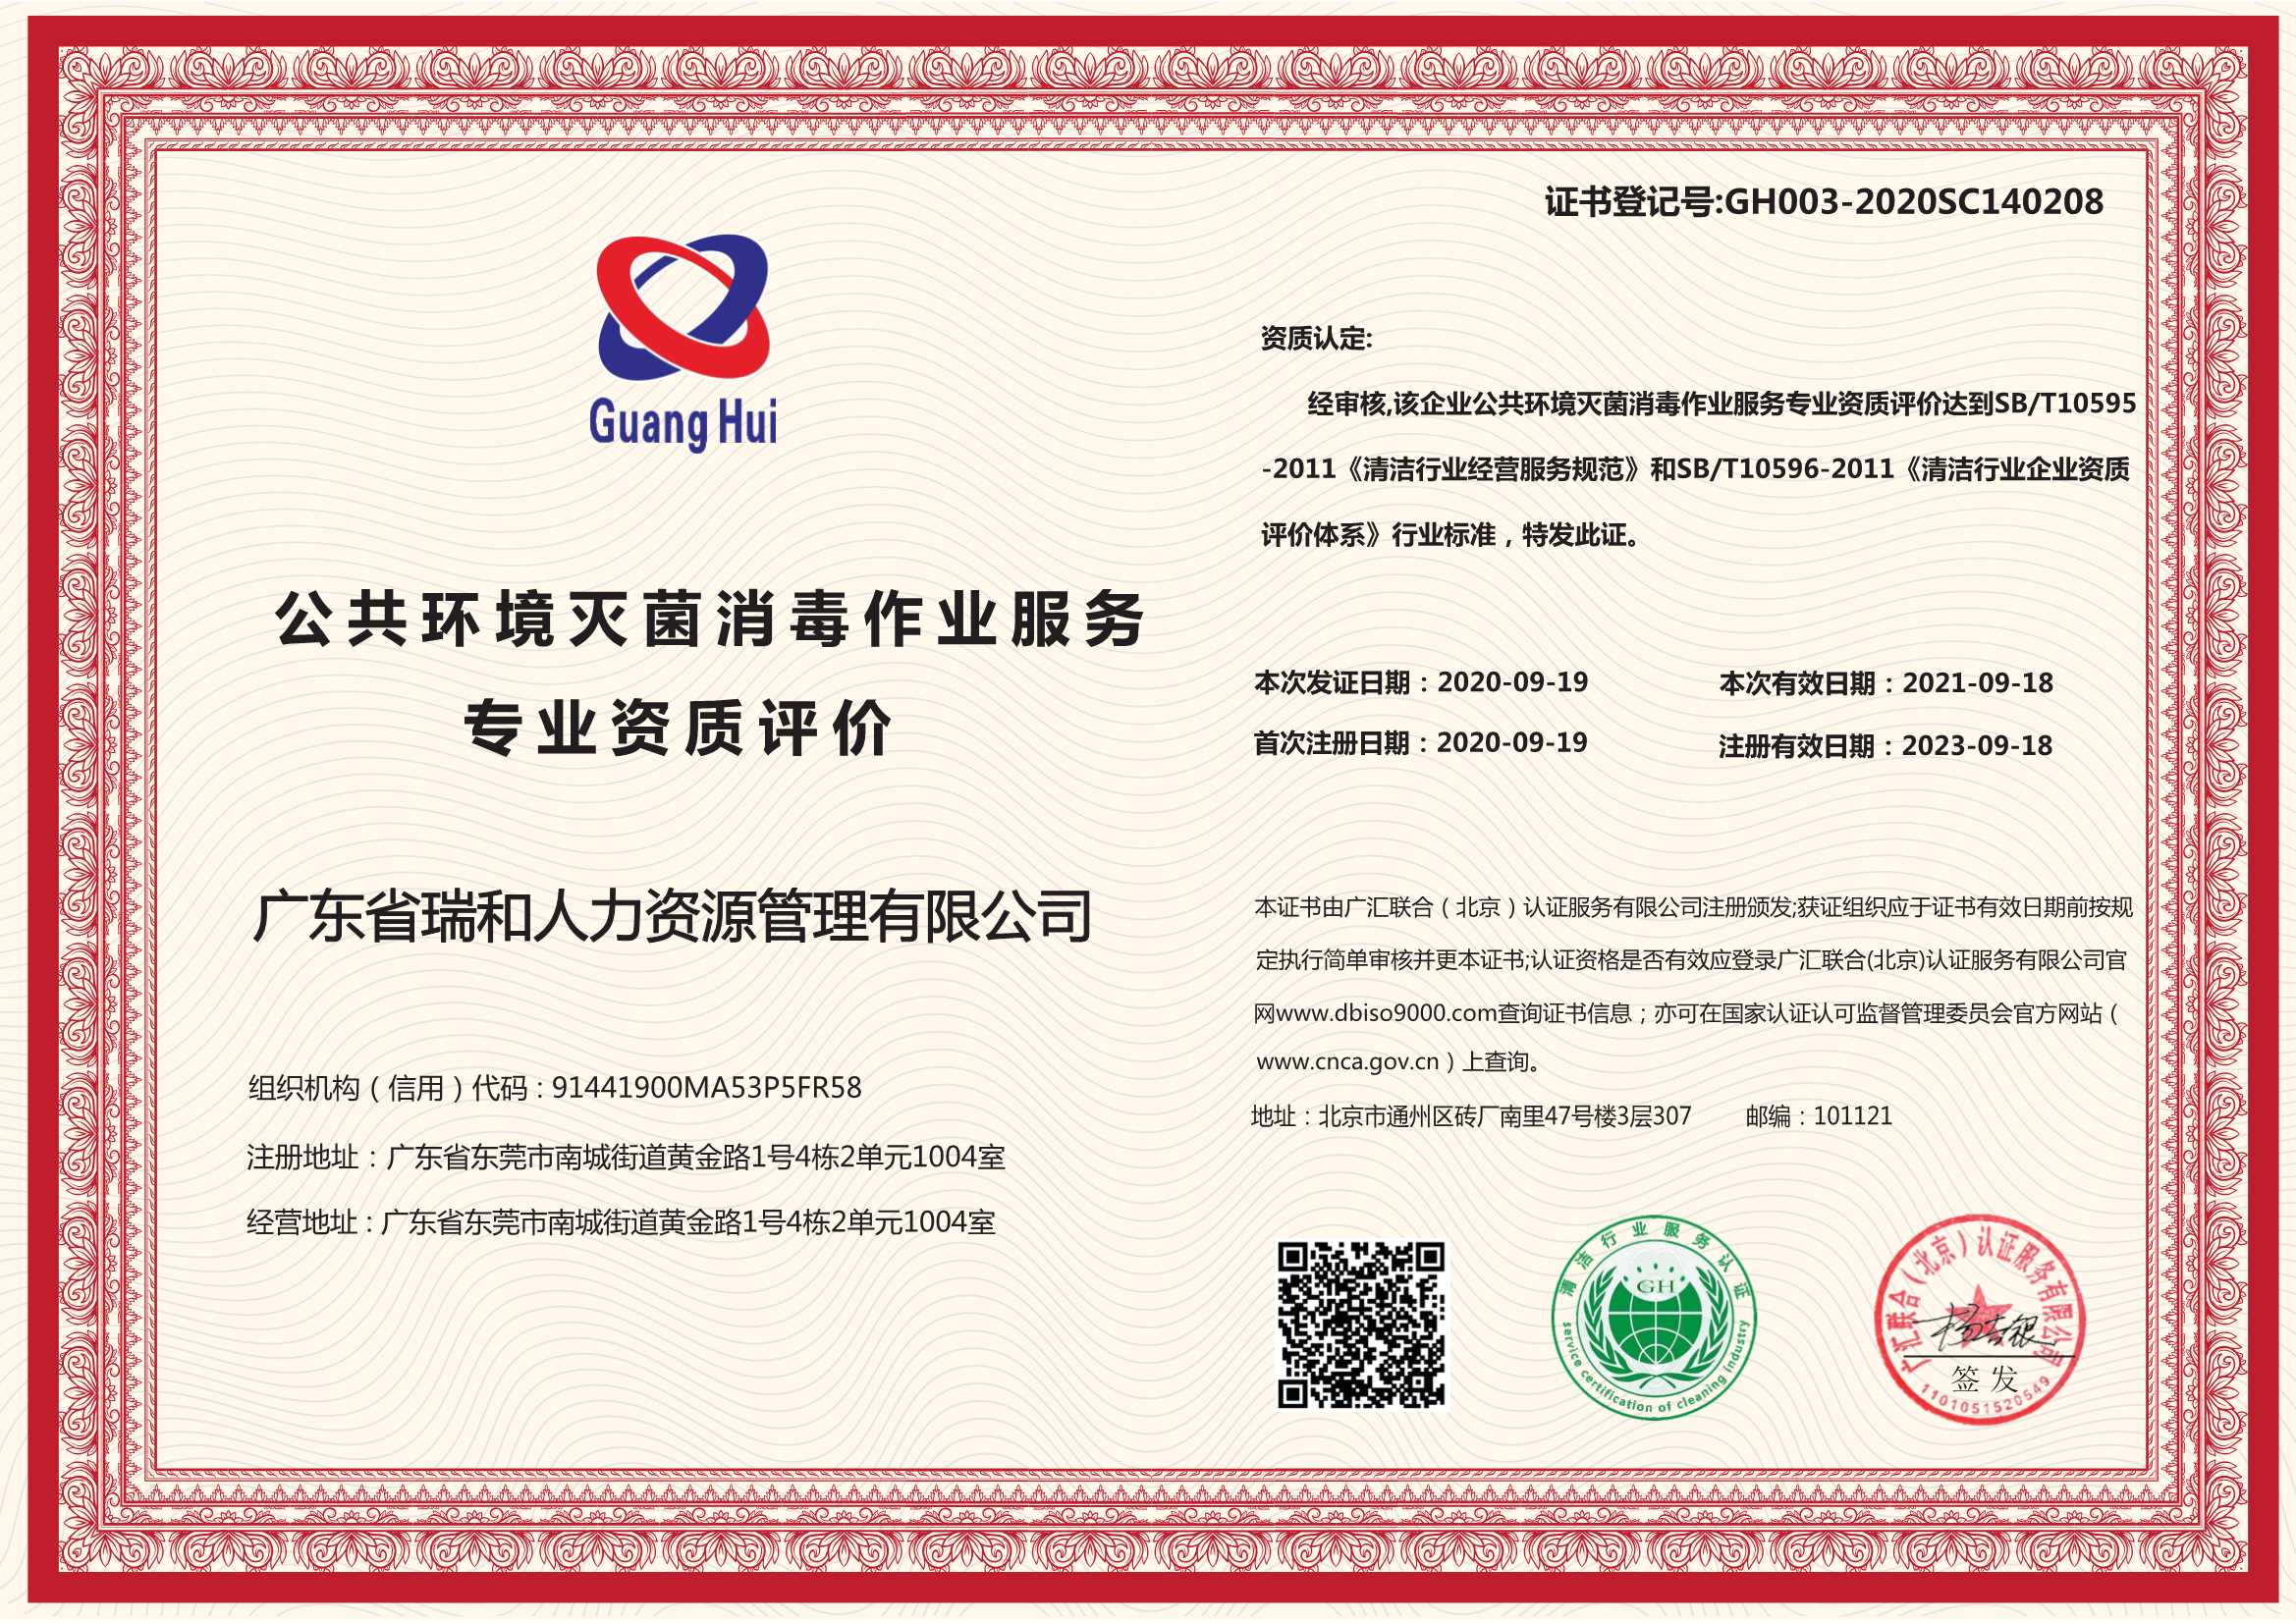 上海GJB 9001C认证 是组织的战略决策 可以保护国家的安全利益